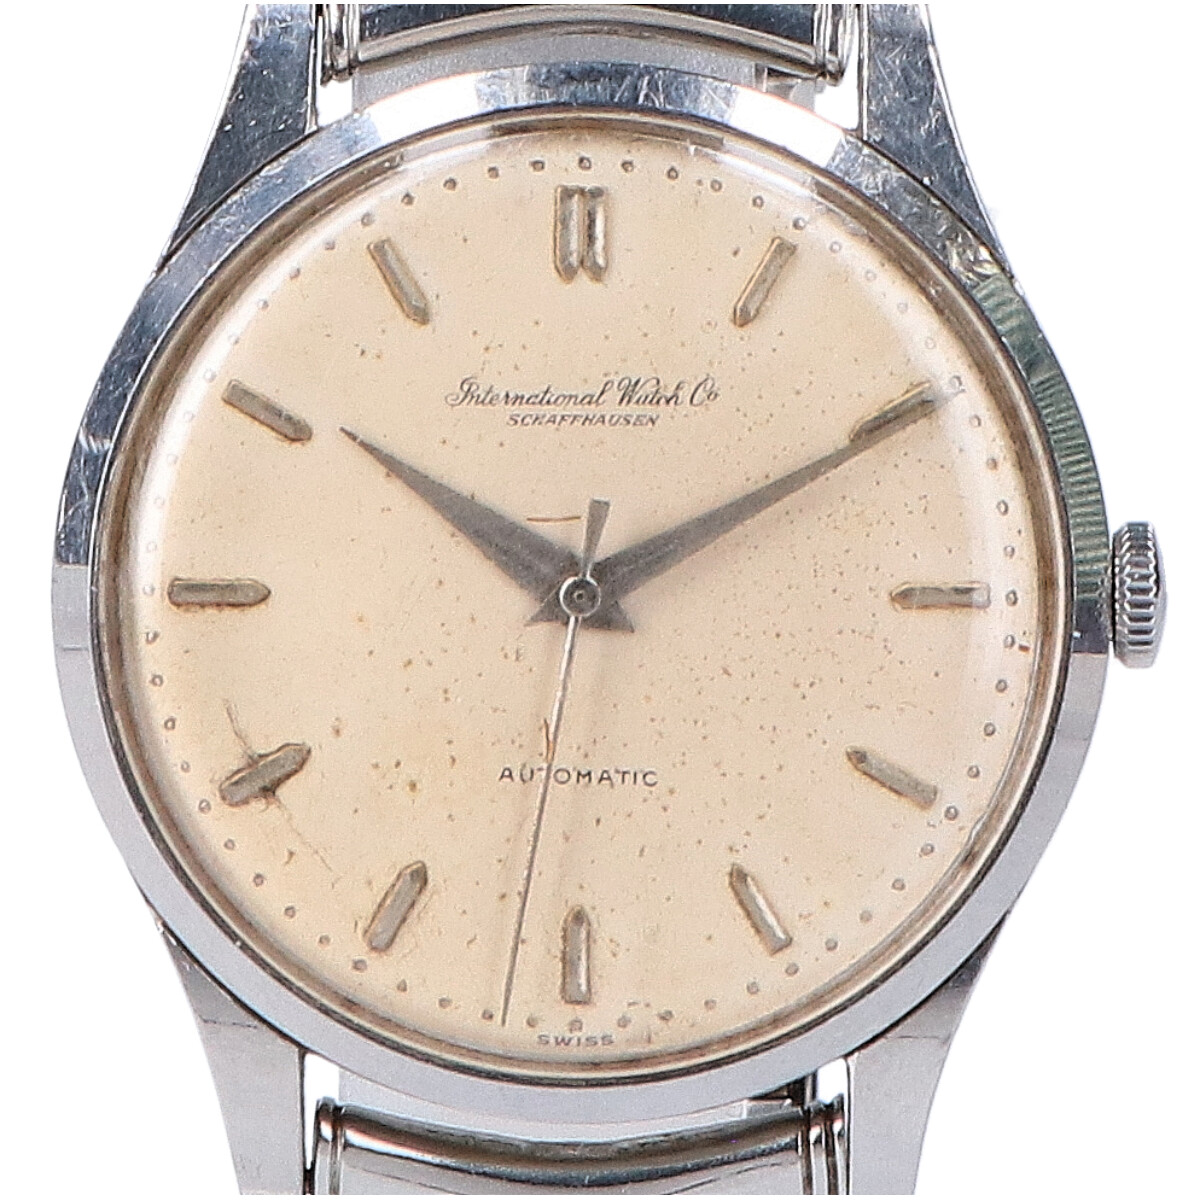 インターナショナルウォッチカンパニーのオールドインター ノンデイト筆記体ロゴ Cal.853 ペラトン式腕時計の買取実績です。